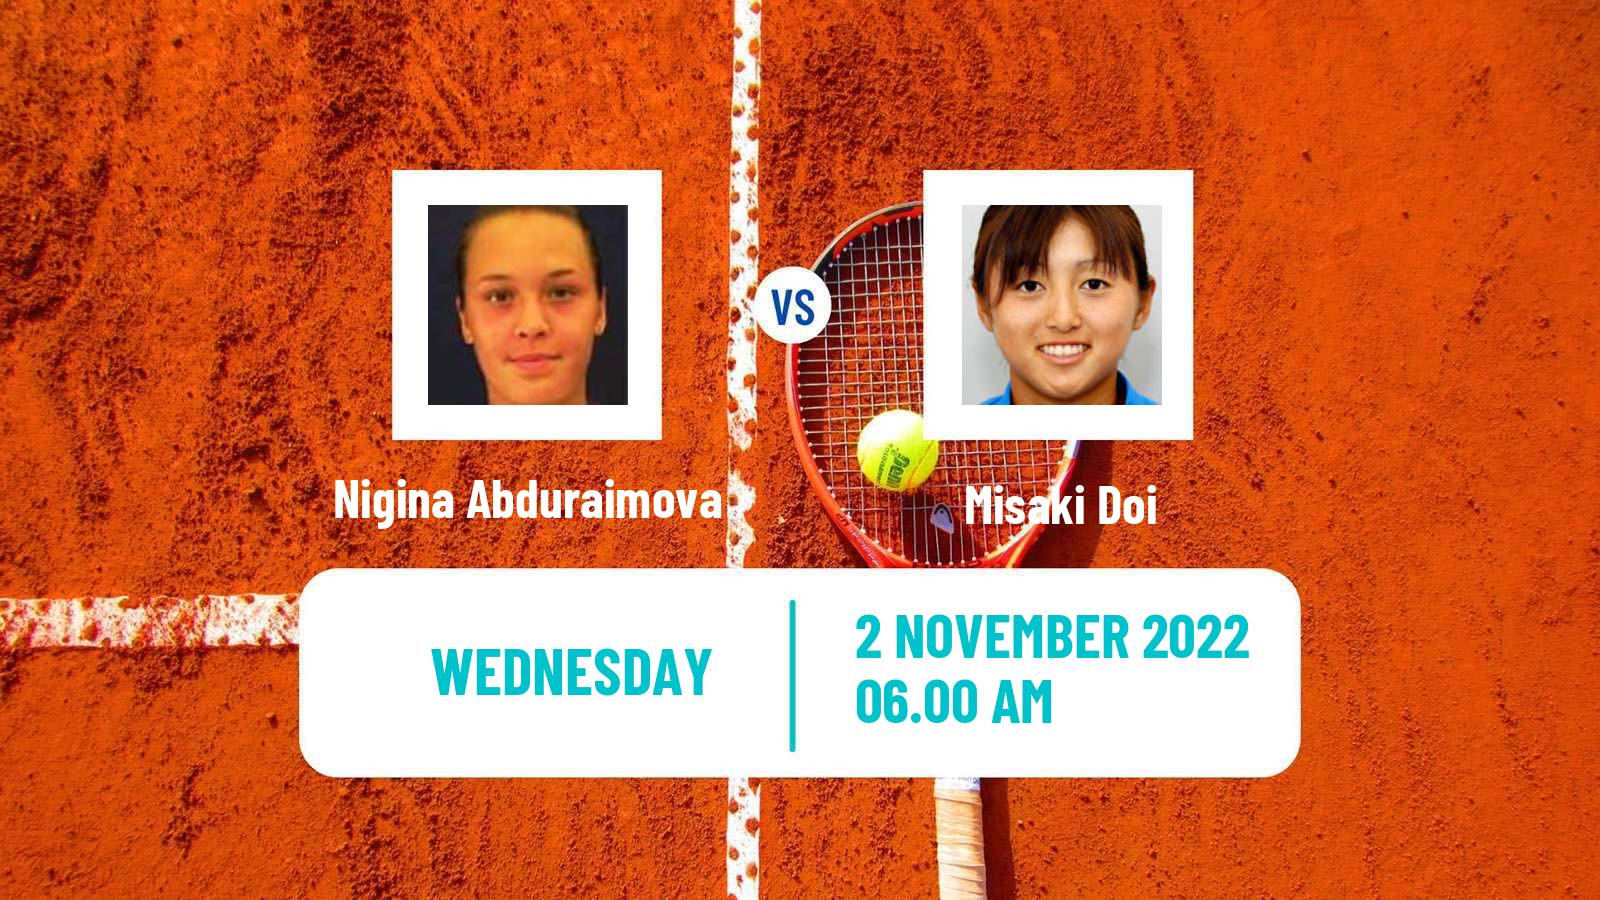 Tennis ITF Tournaments Nigina Abduraimova - Misaki Doi